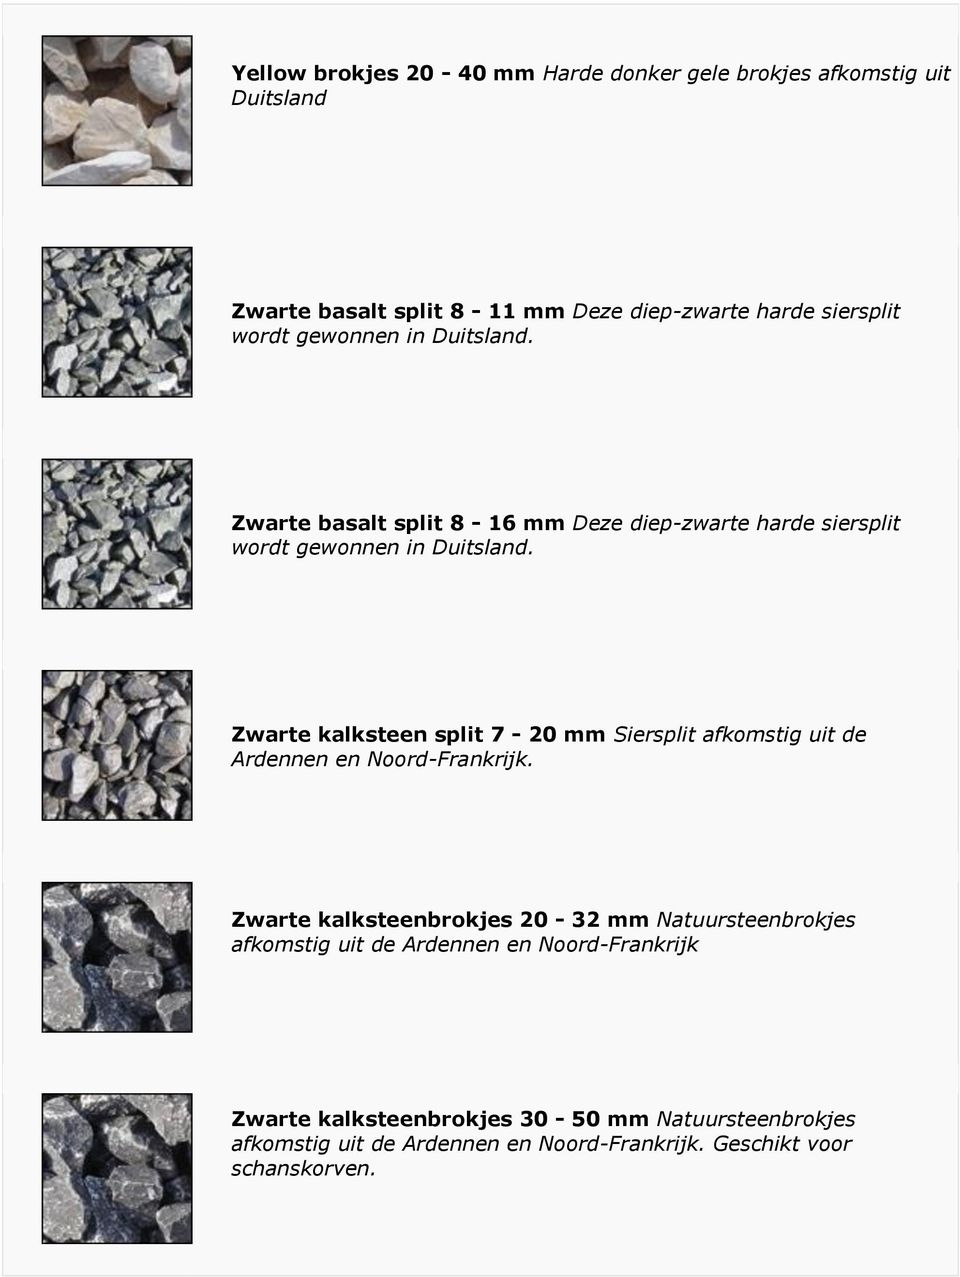 Zwarte kalksteen split 7-20 mm Siersplit afkomstig uit de Ardennen en Noord-Frankrijk.